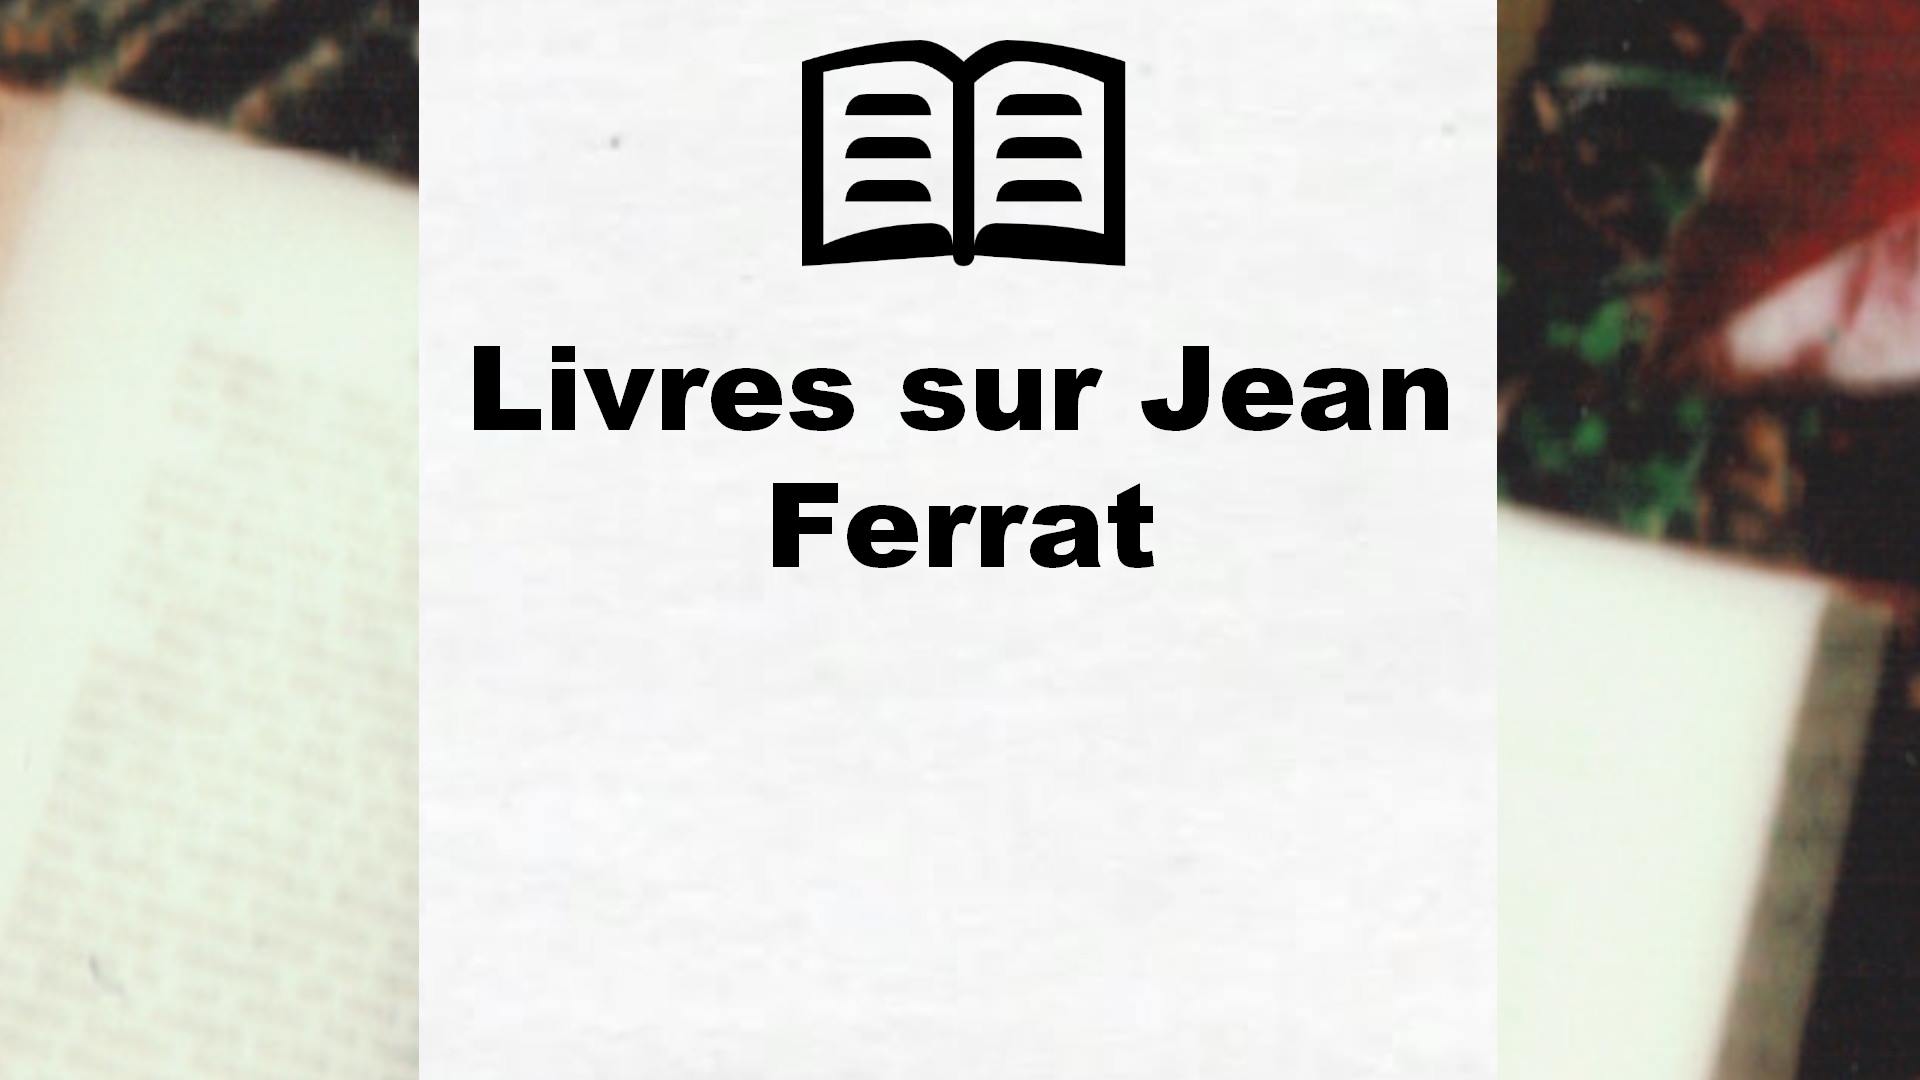 Livres sur Jean Ferrat